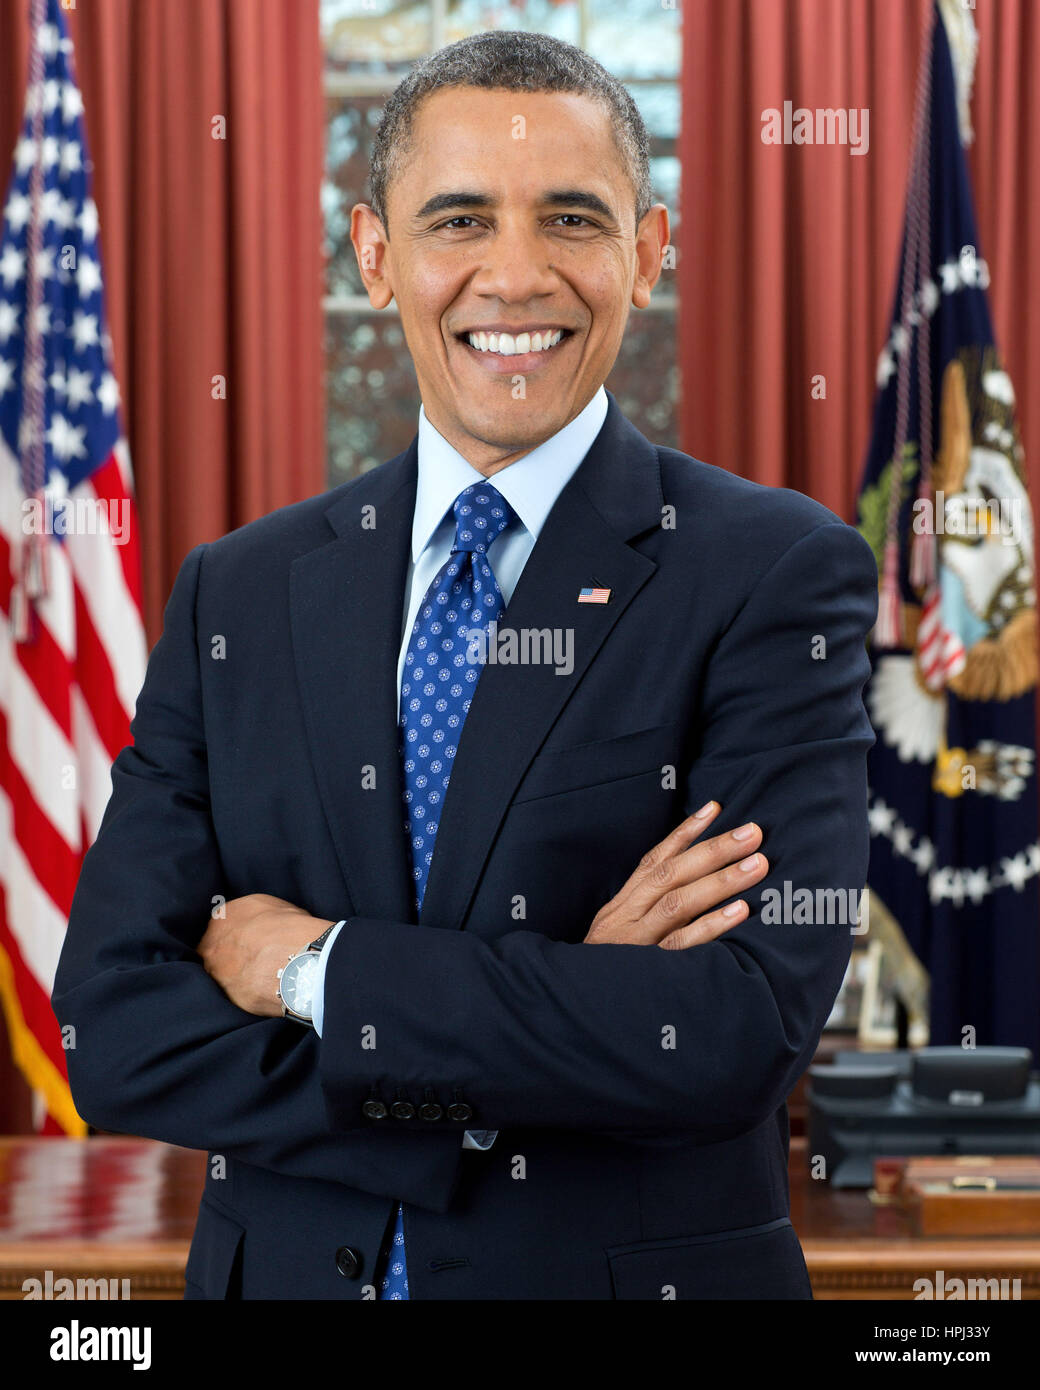 El presidente Barack Obama posa para una foto oficial en la Oficina Oval de la Casa Blanca, el 6 de diciembre de 2012. Foto: Pete Souza/funcionario de la Casa Blanca Foto de stock